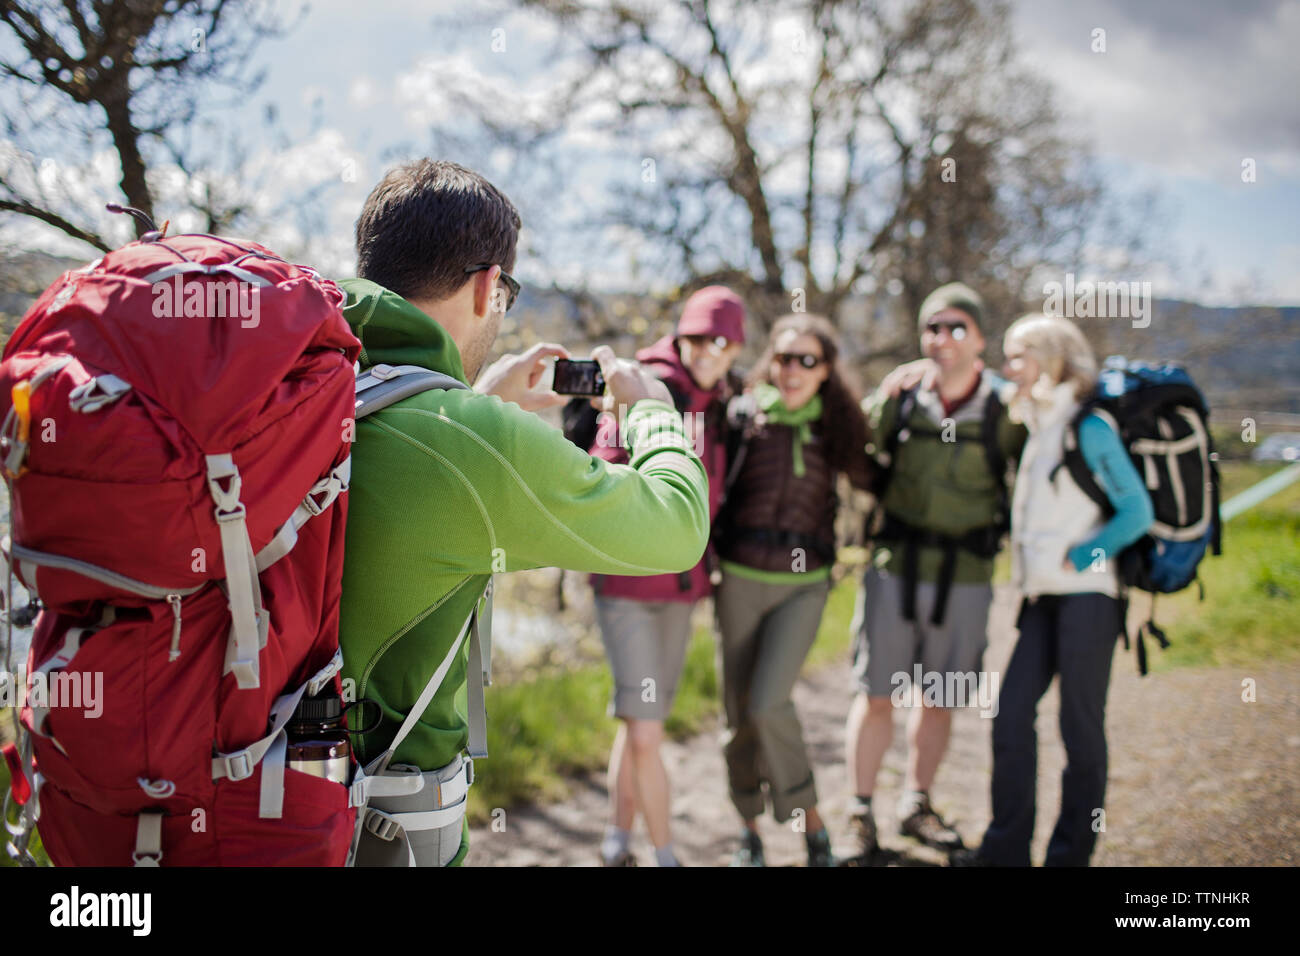 Escursionista maschio a fotografare gli amici in piedi sul campo tramite la fotocamera Foto Stock